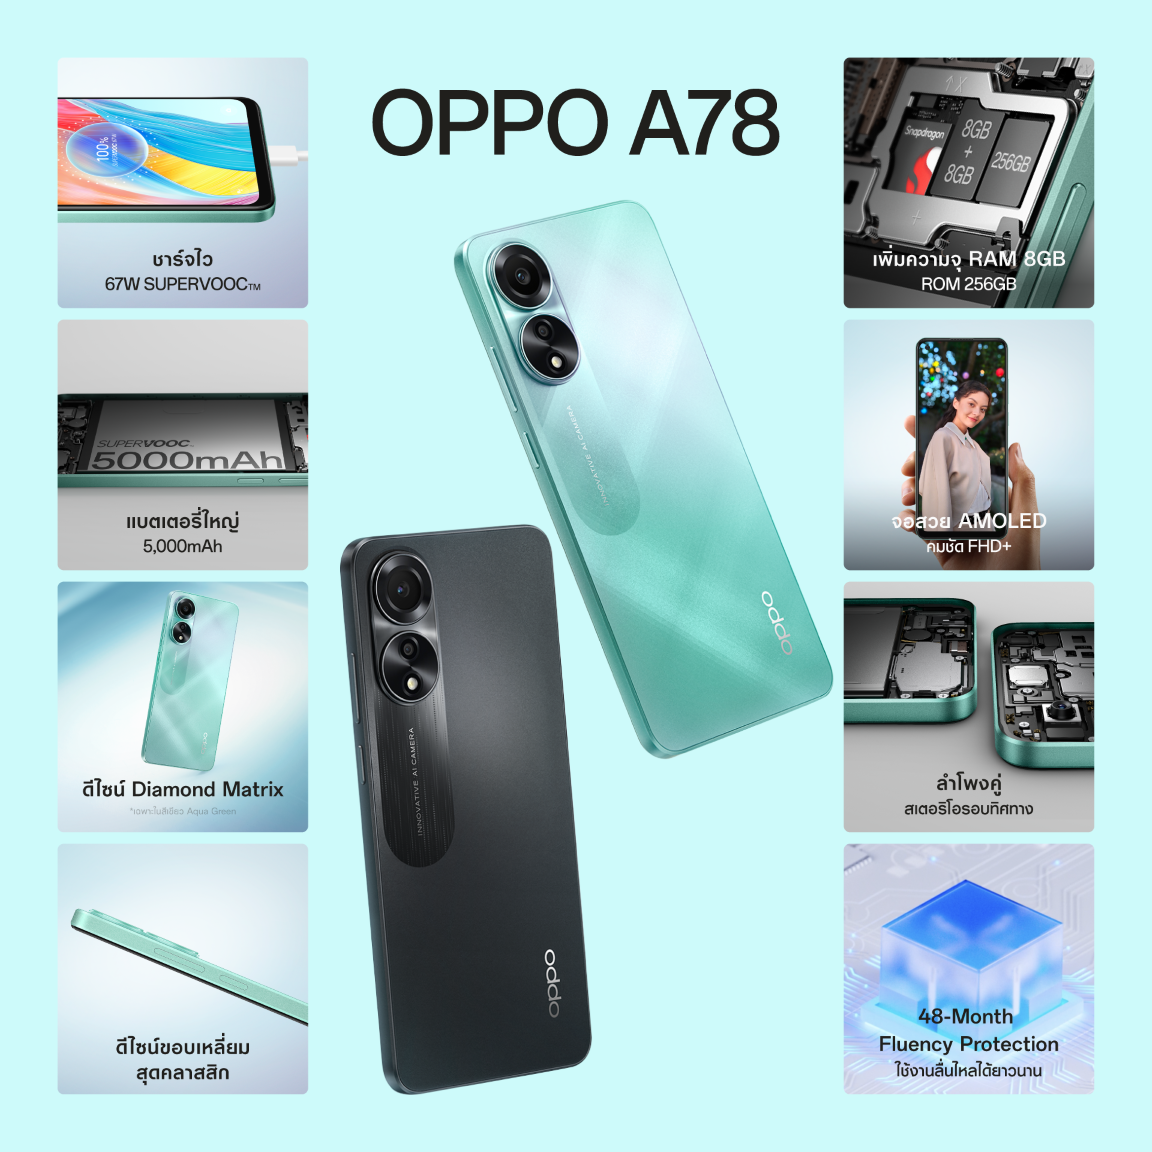 OPPO A78 สมาร์ตโฟนมอบความเร็วแรงสุดทุกเอนเตอร์เทนให้คุณเต็มอิ่มกับความบันเทิงได้ง่ายยิ่งขึ้น ในราคาใหม่ เพียง 7,999 บาทเท่านั้น!